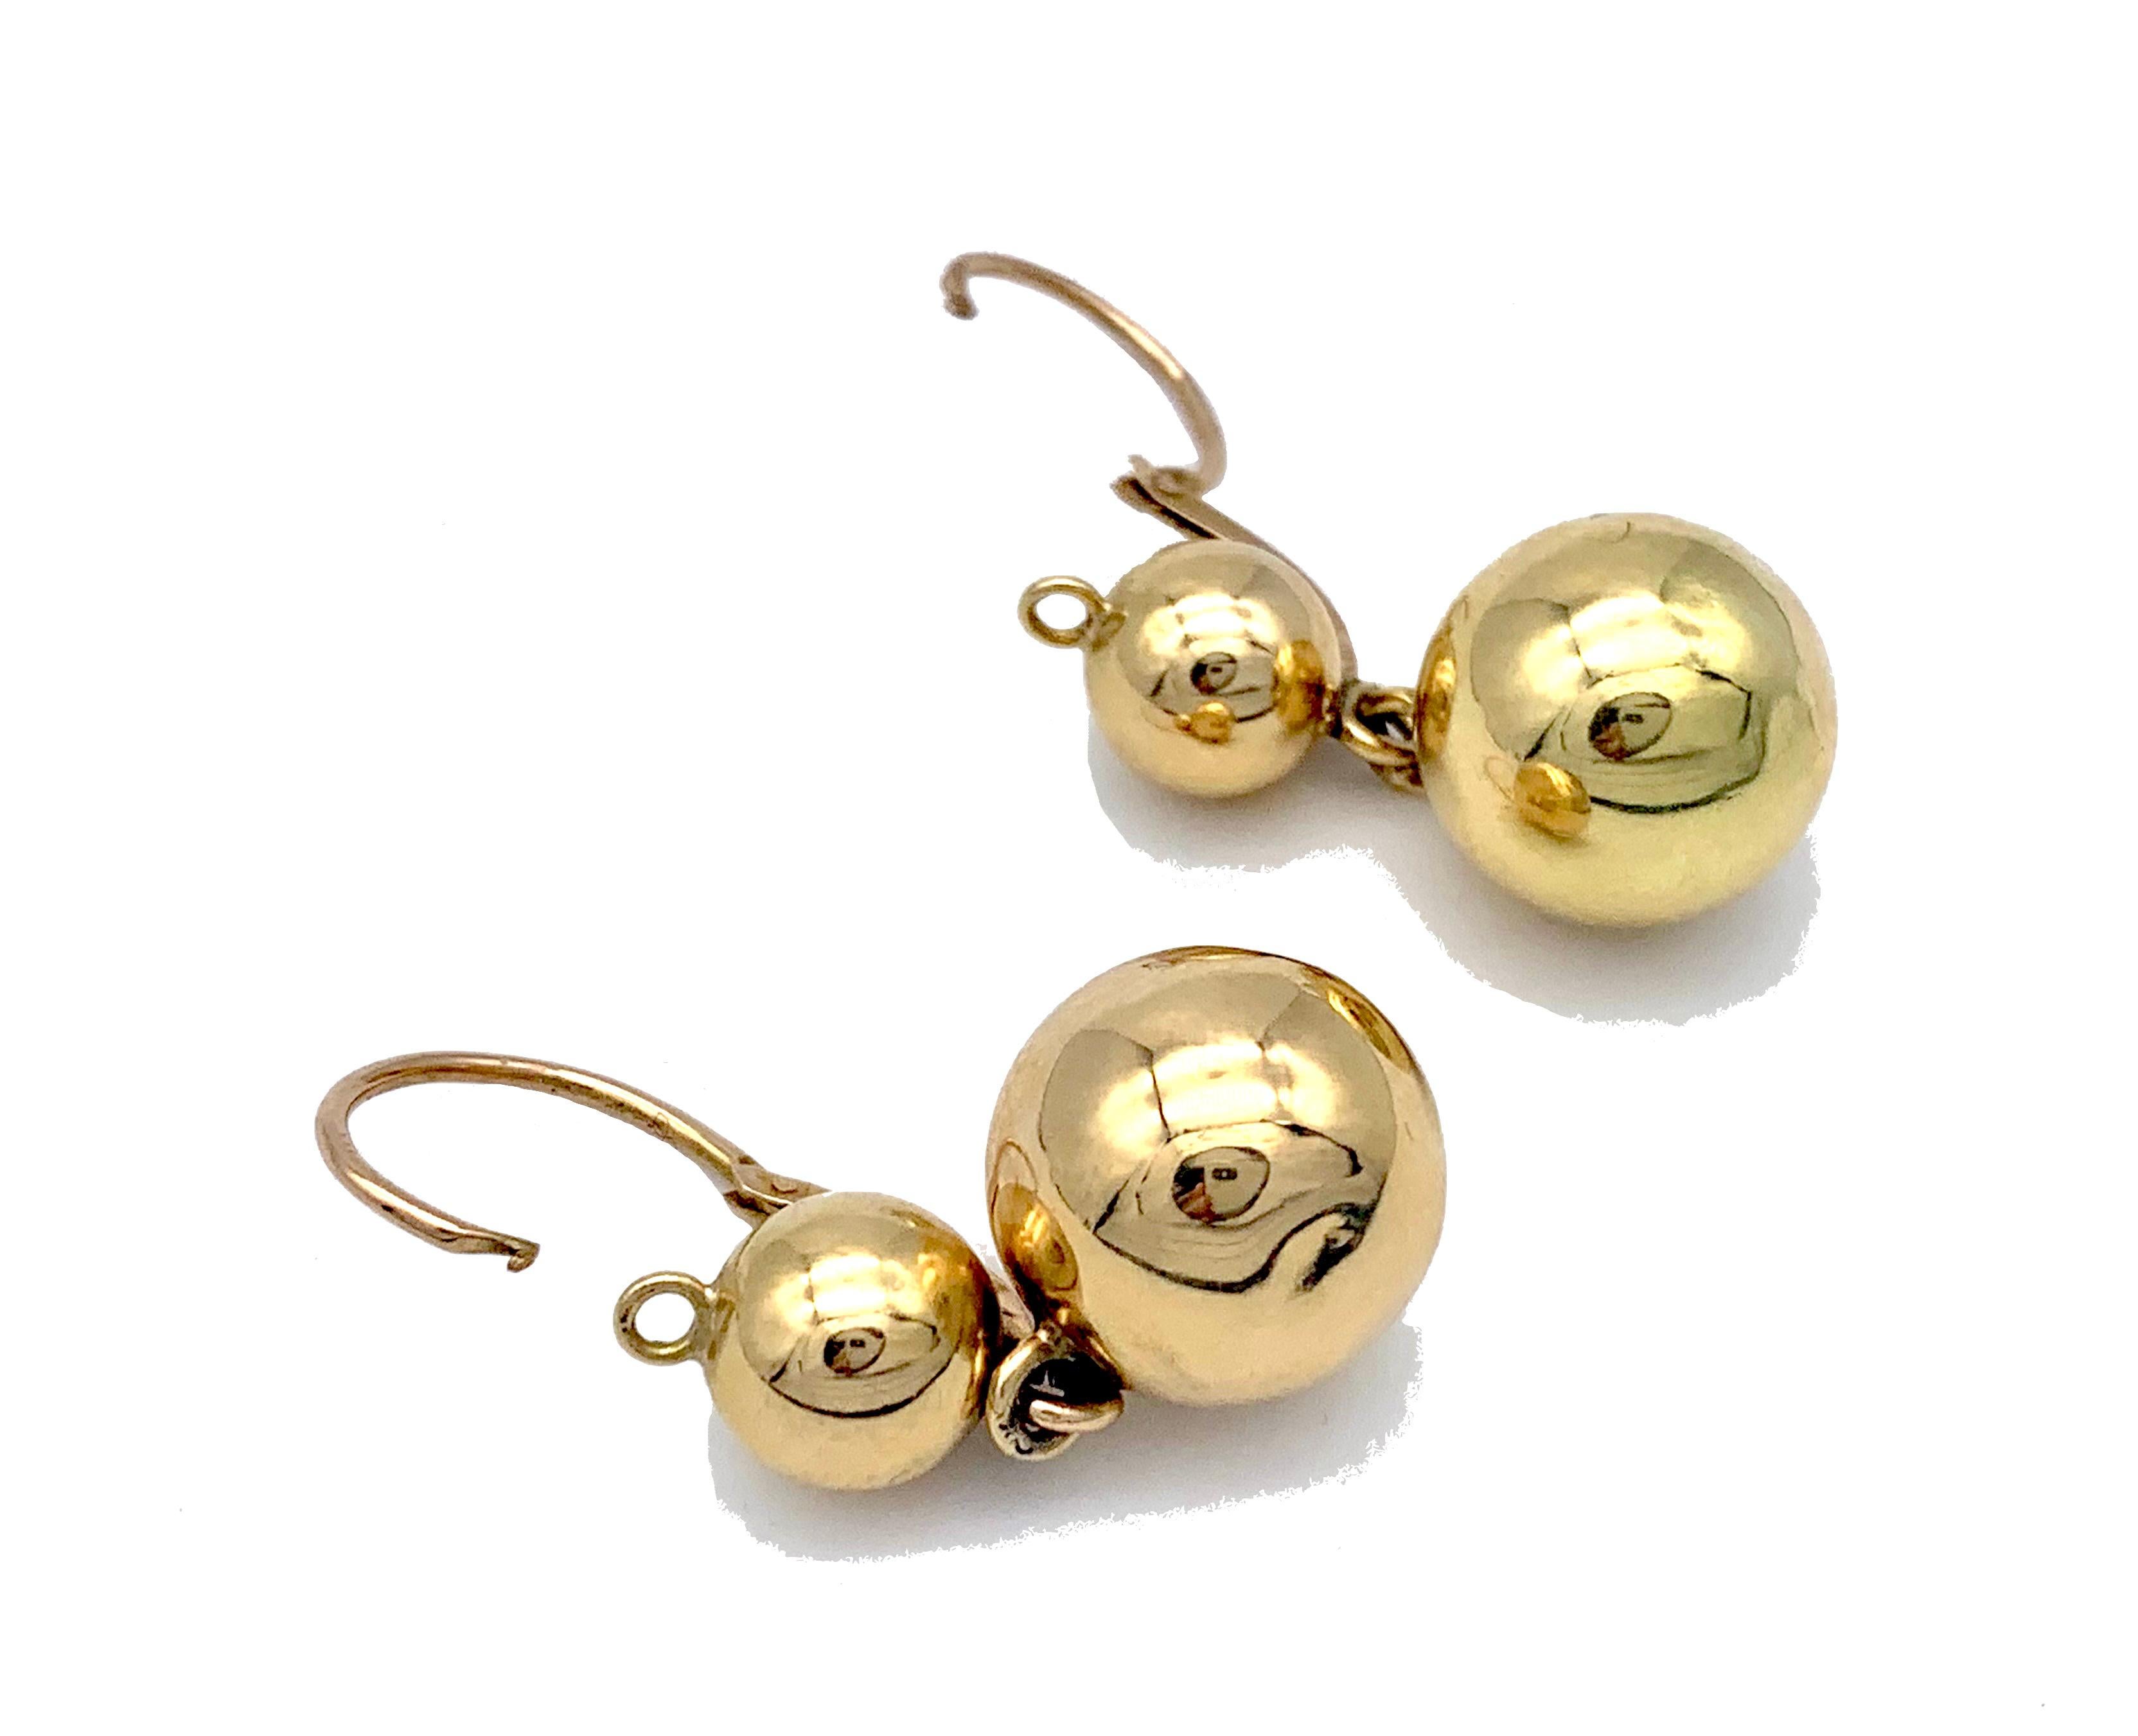 Ces élégantes boucles d'oreilles pendantes ont été fabriquées en France vers 1880 en or 18 carats. Les crochets sont marqués d'un poinçon français. Le motif de la balle est toujours attrayant, reflétant la lumière et l'environnement. Les boucles